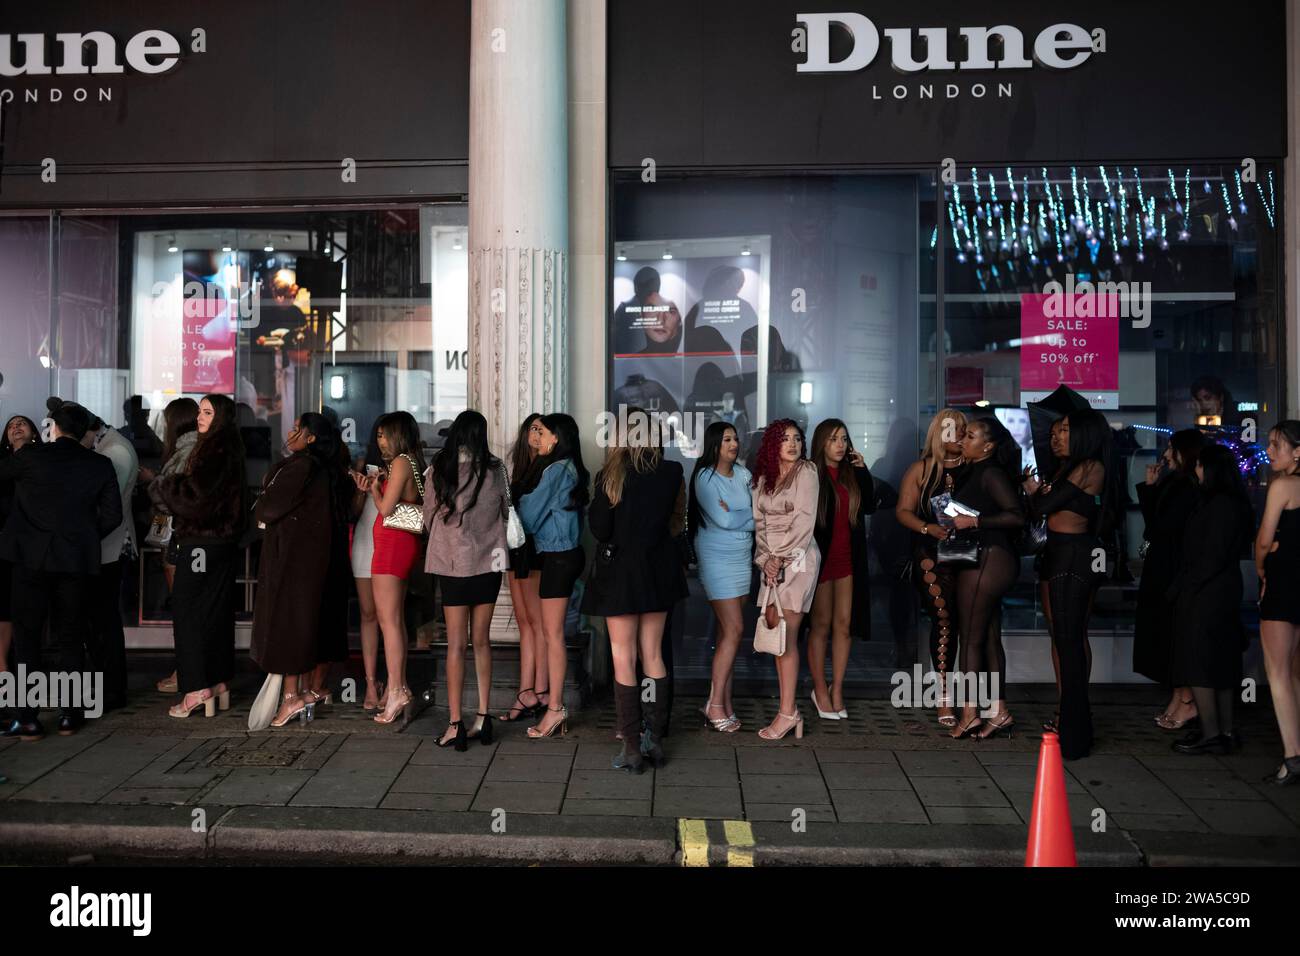 Les jeunes femmes font la queue devant une boîte de nuit lors d'une soirée du nouvel an humide en mottes dans le quartier du West End de la capitale, Londres, Angleterre, Royaume-Uni. Banque D'Images